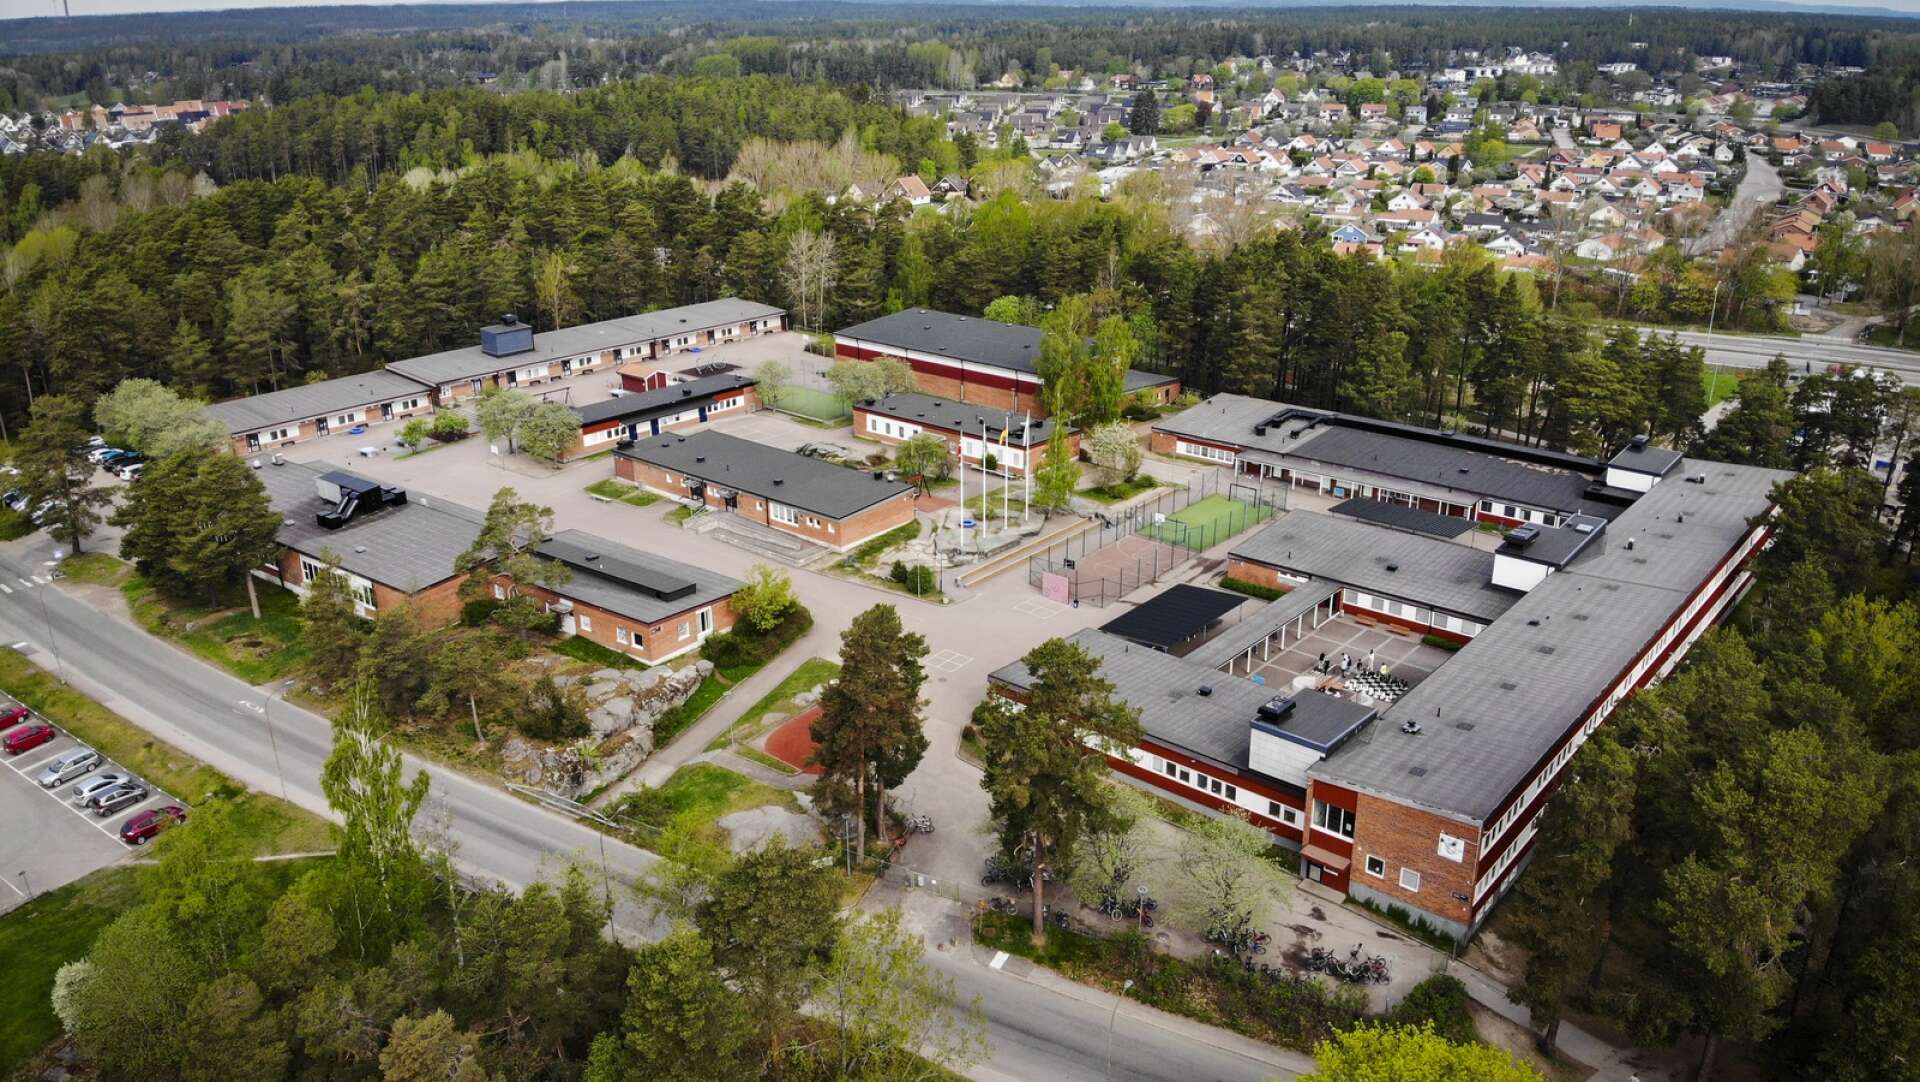 Skandalen på Engelska skolan i Karlstad briserade i maj i år, efter att den anställde mannen häktats misstänkt för barnpornografibrott.